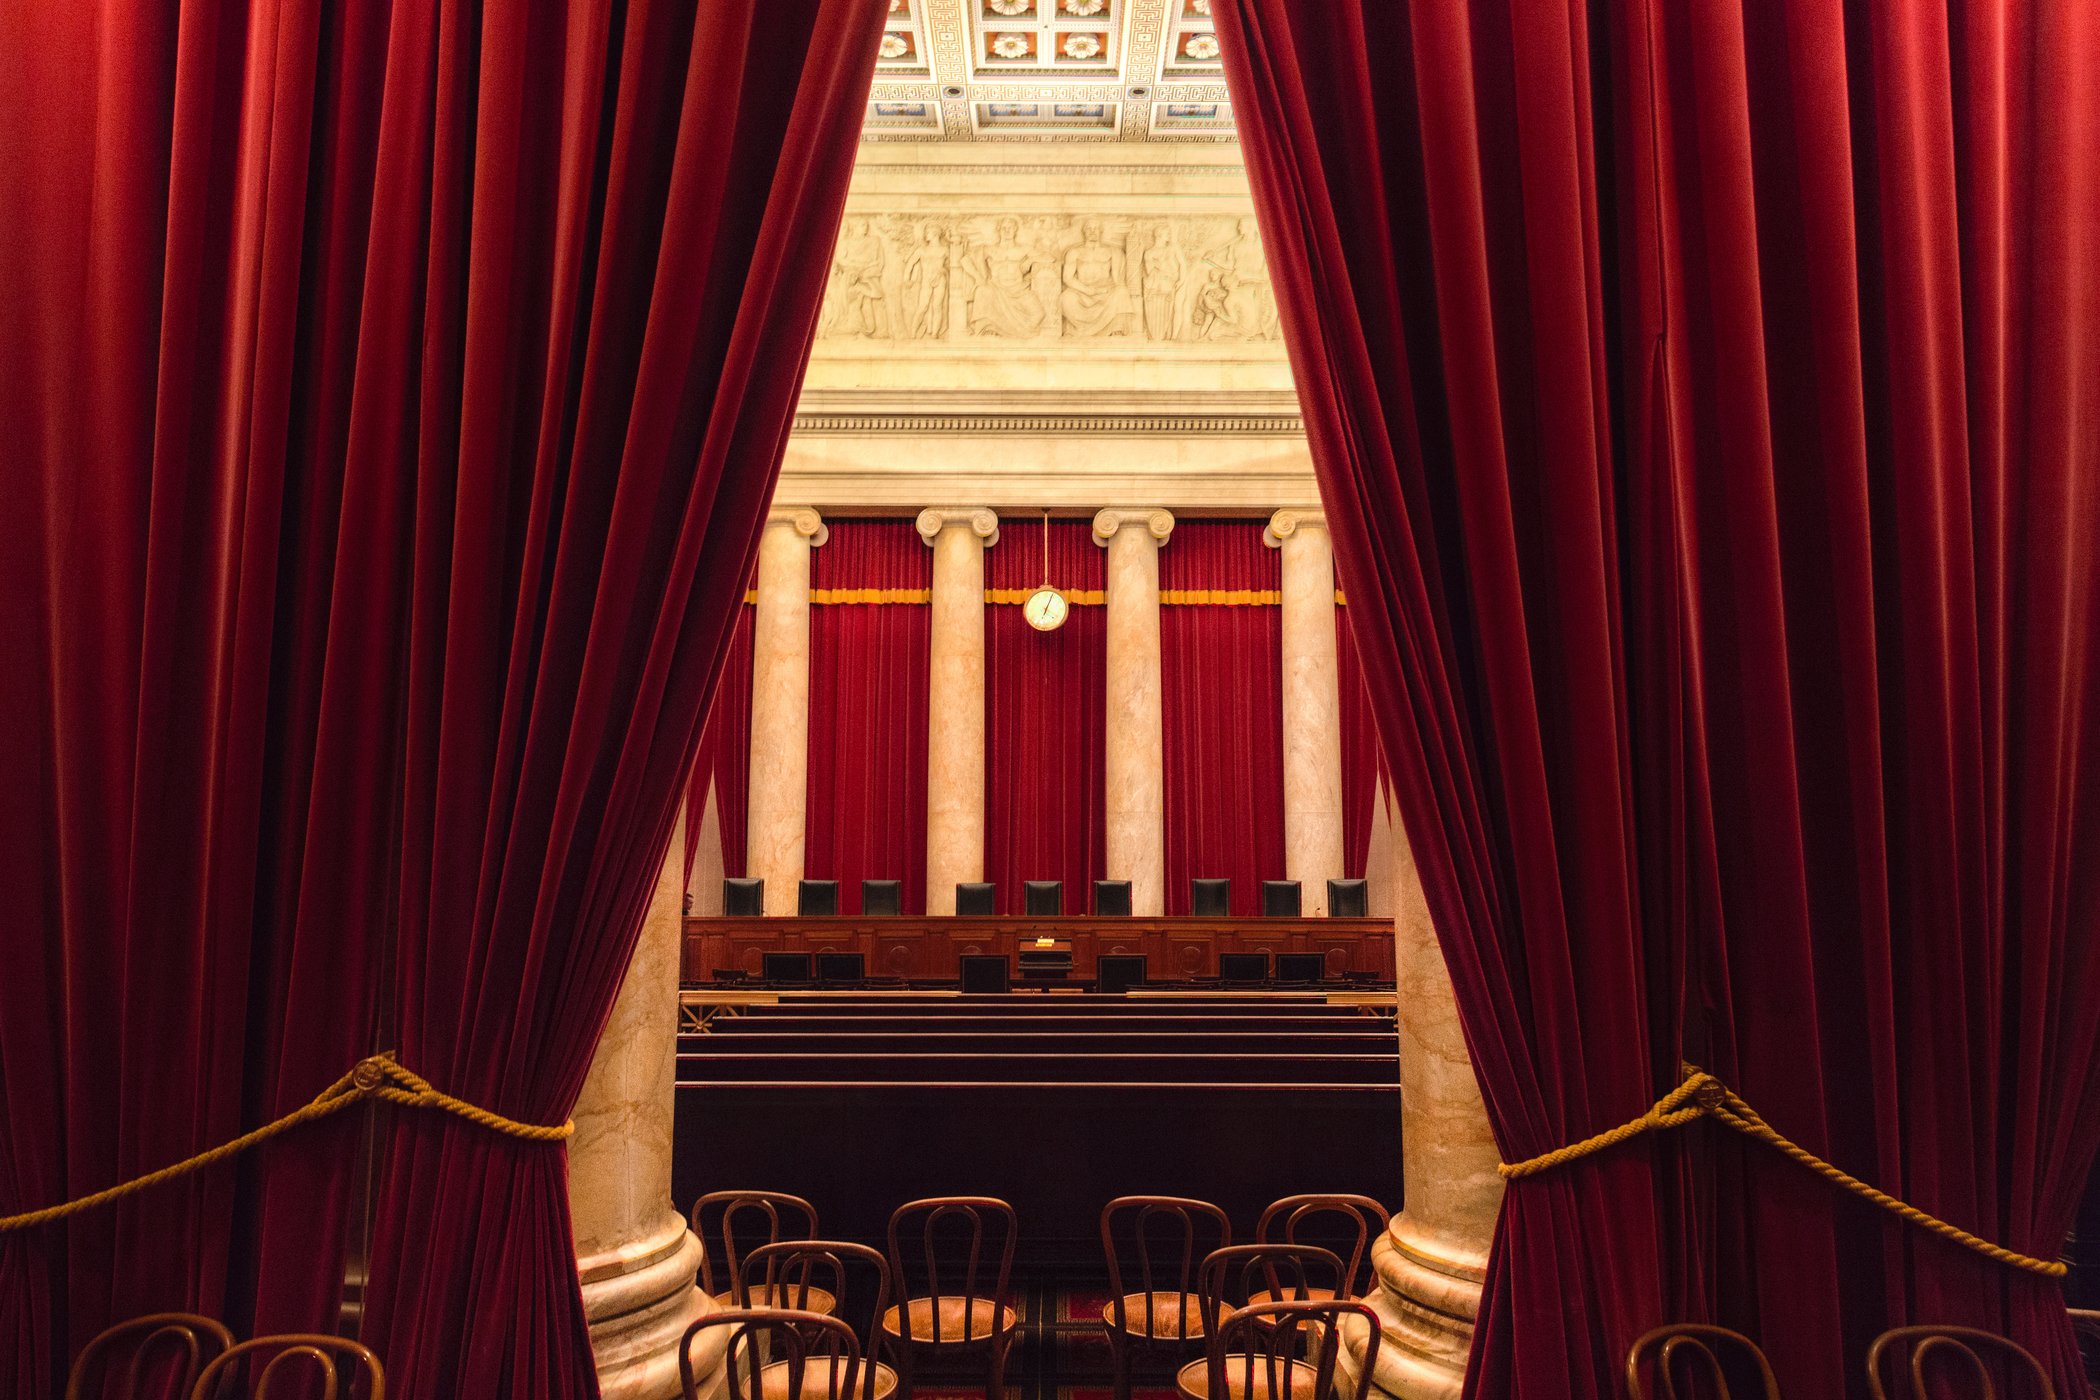 Blick auf Kammer des Supreme Court in den USA durch einen roten Vorhang